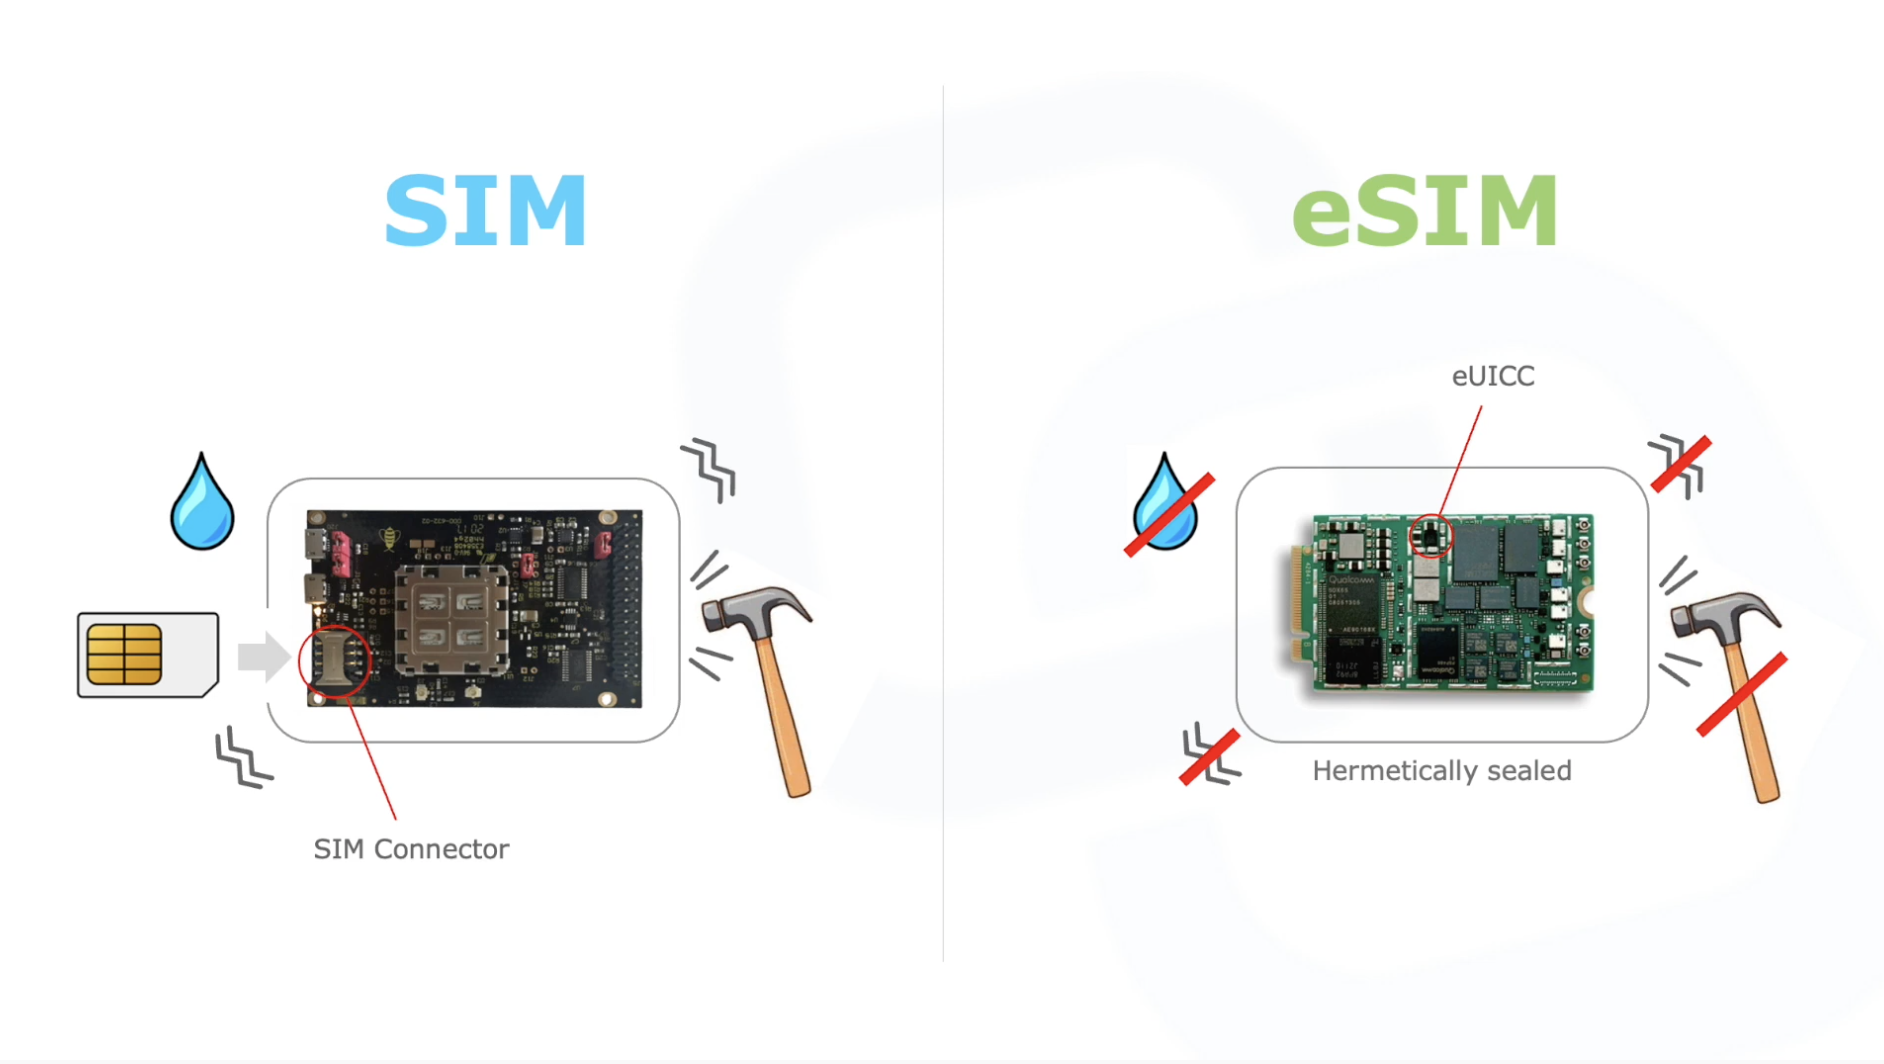 Benefits of eSIM in IoT